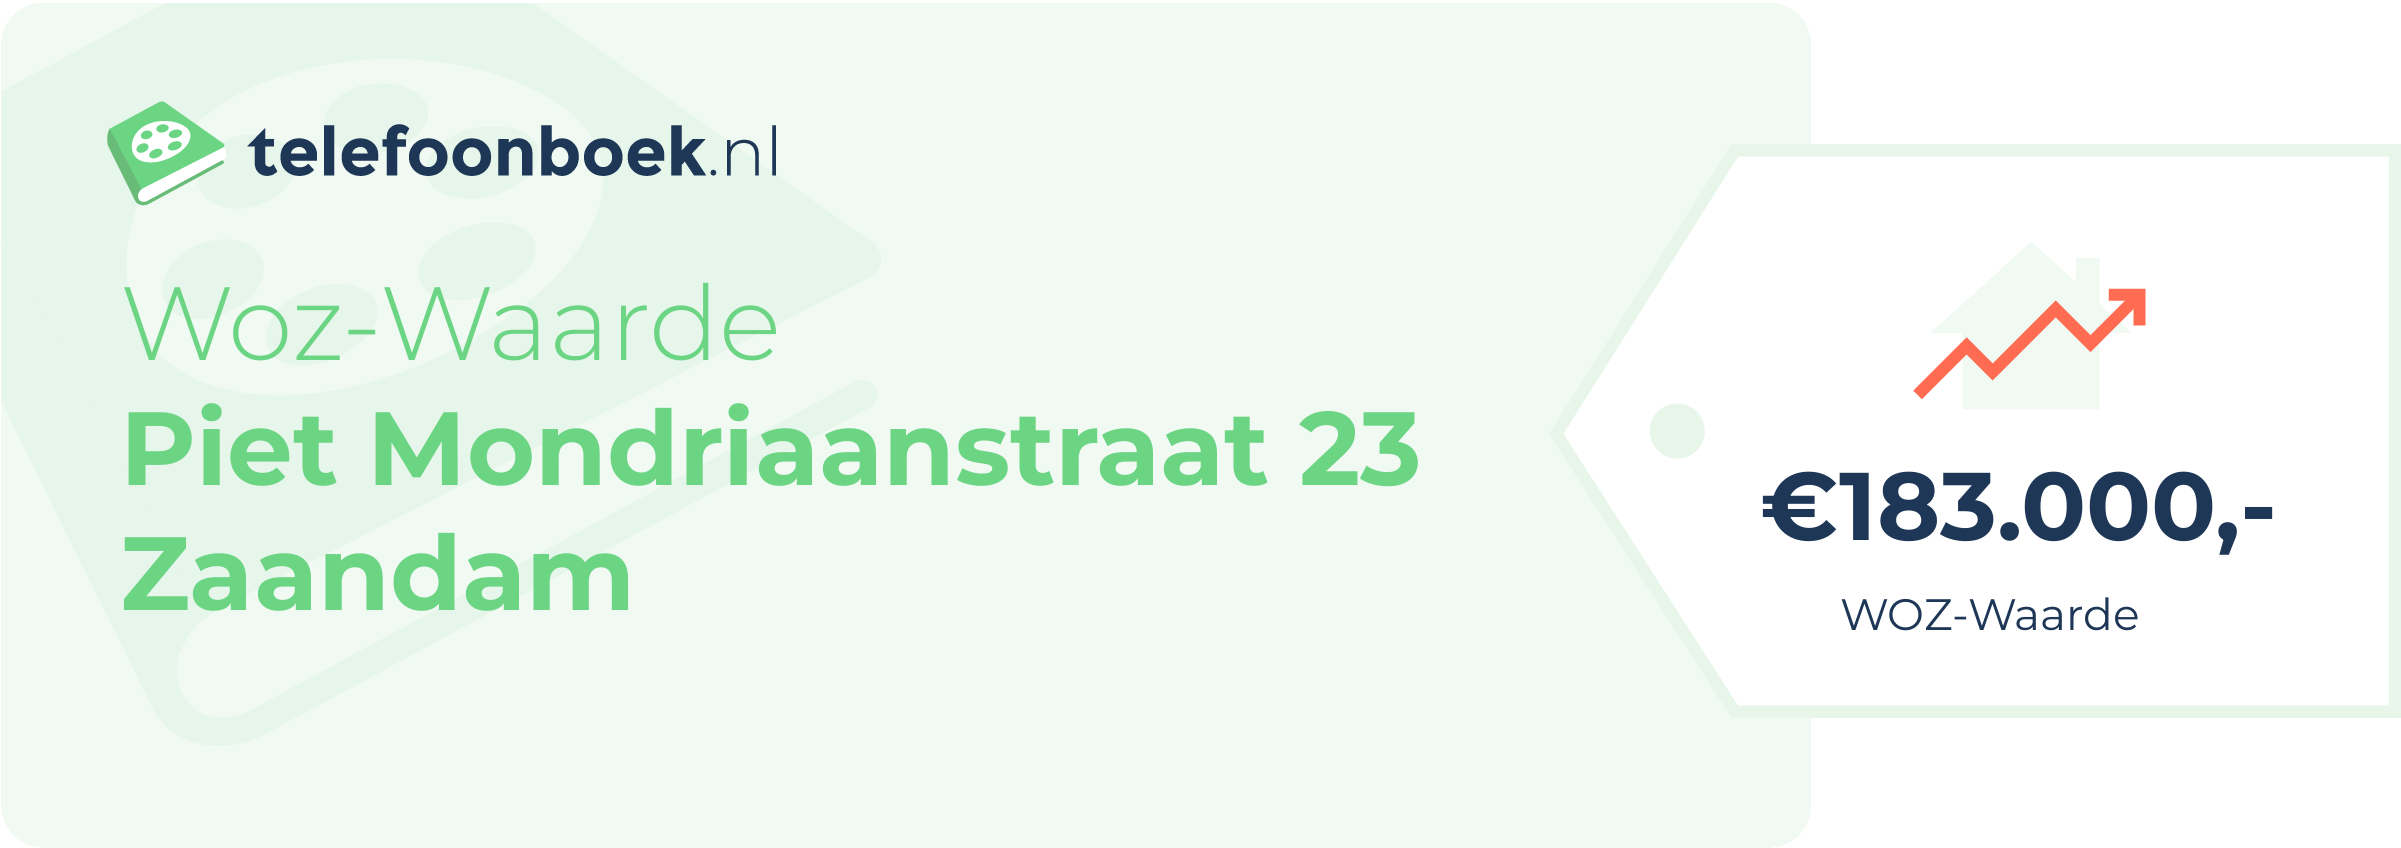 WOZ-waarde Piet Mondriaanstraat 23 Zaandam